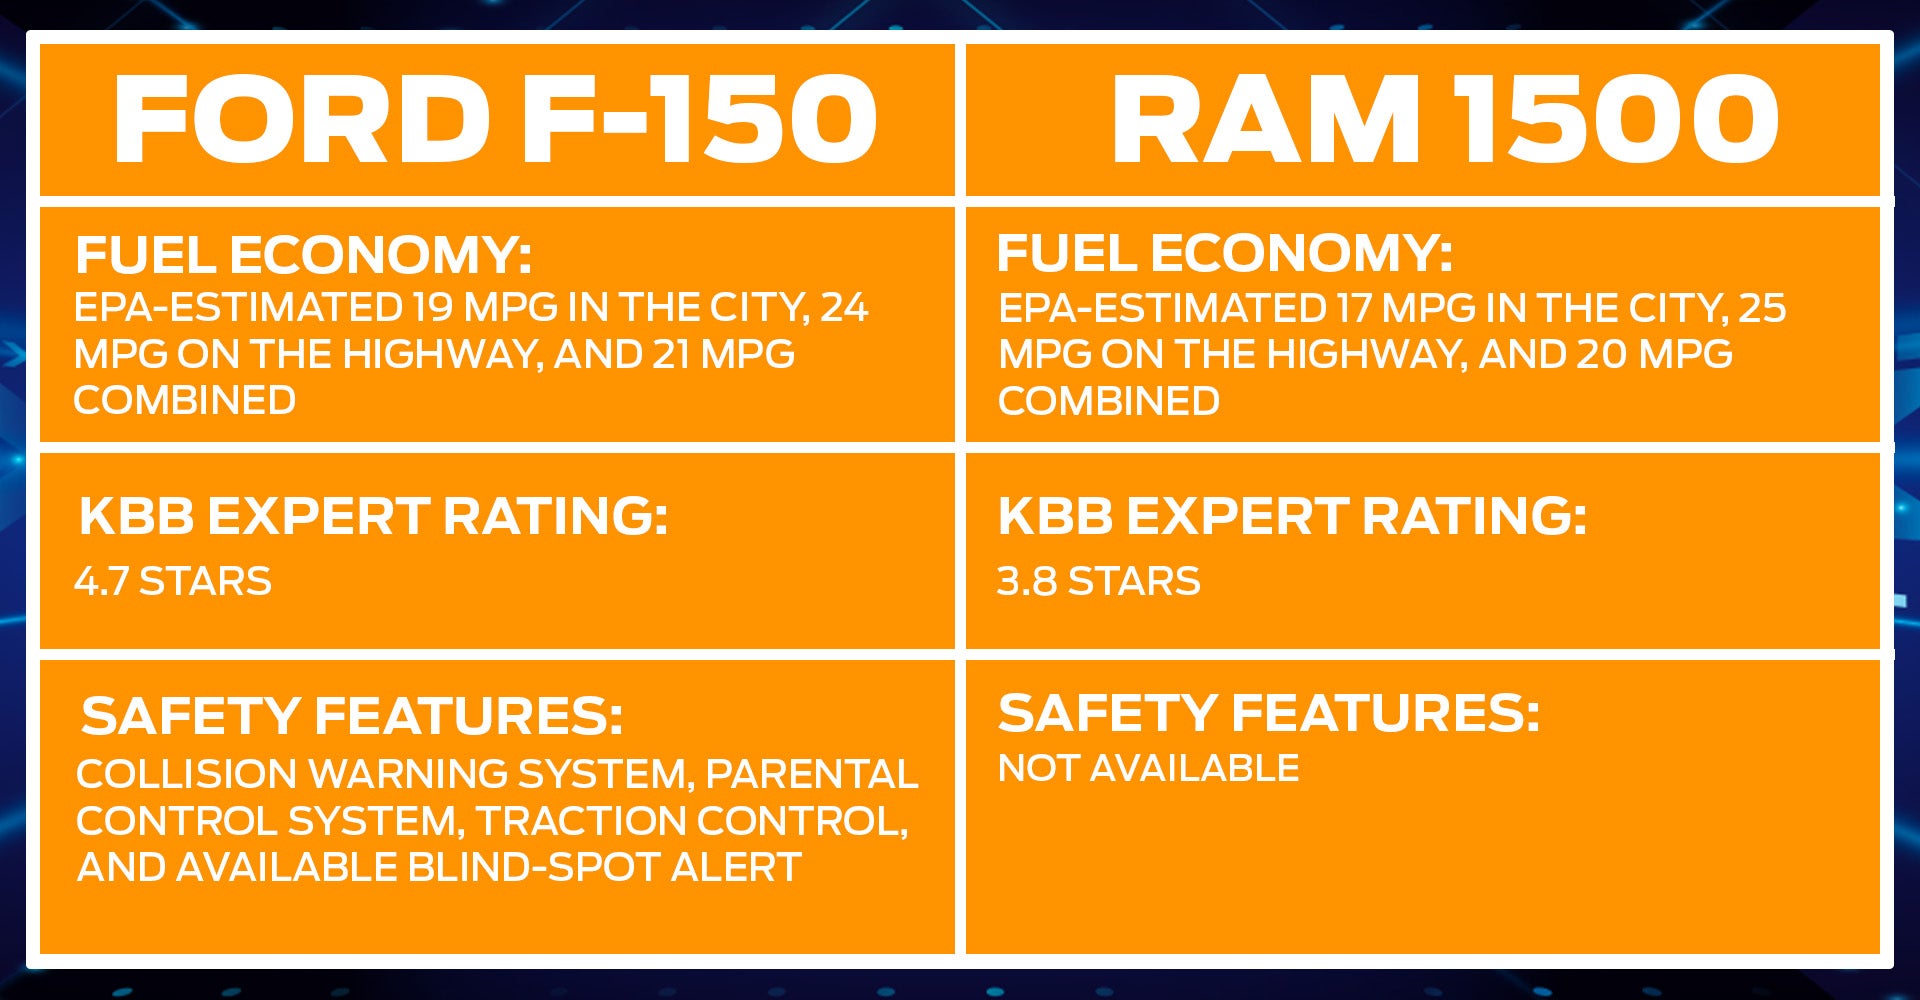 Ford F-150 vs. Ram 1500 Comparison